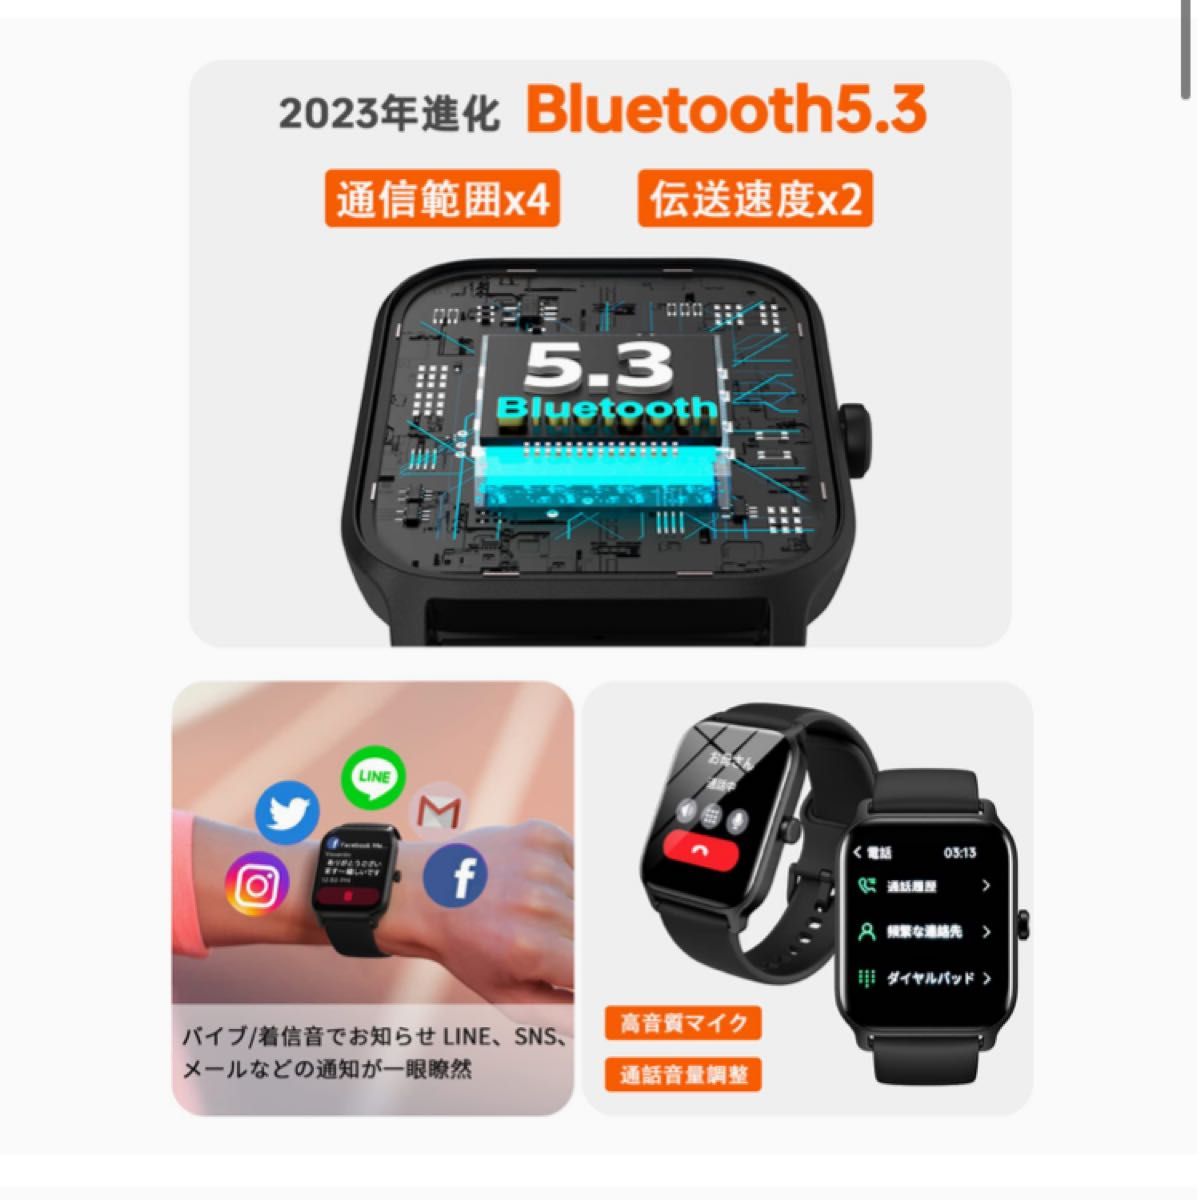 スマートウォッチ 新機種 Bluetooth5.3 通話機能 1.8インチ大画面 Alexa音声 活動量計 歩数計 